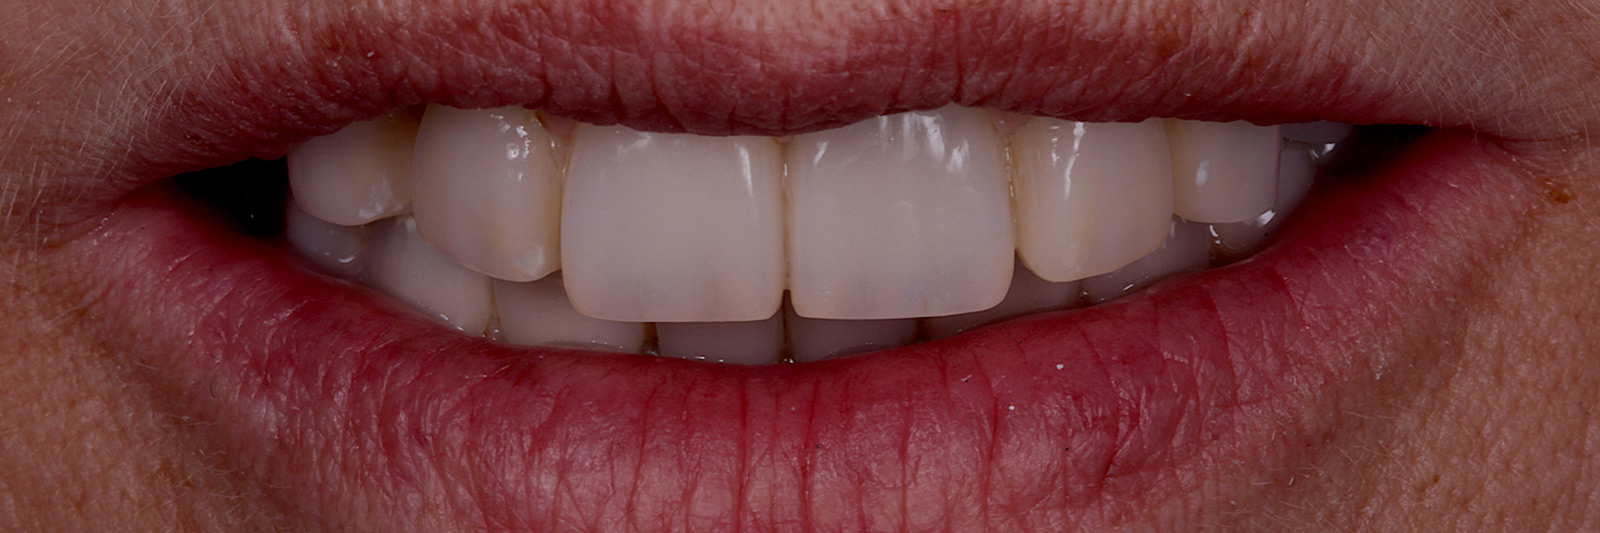 Frontansicht schöner Zähne im Mund einer Patientin